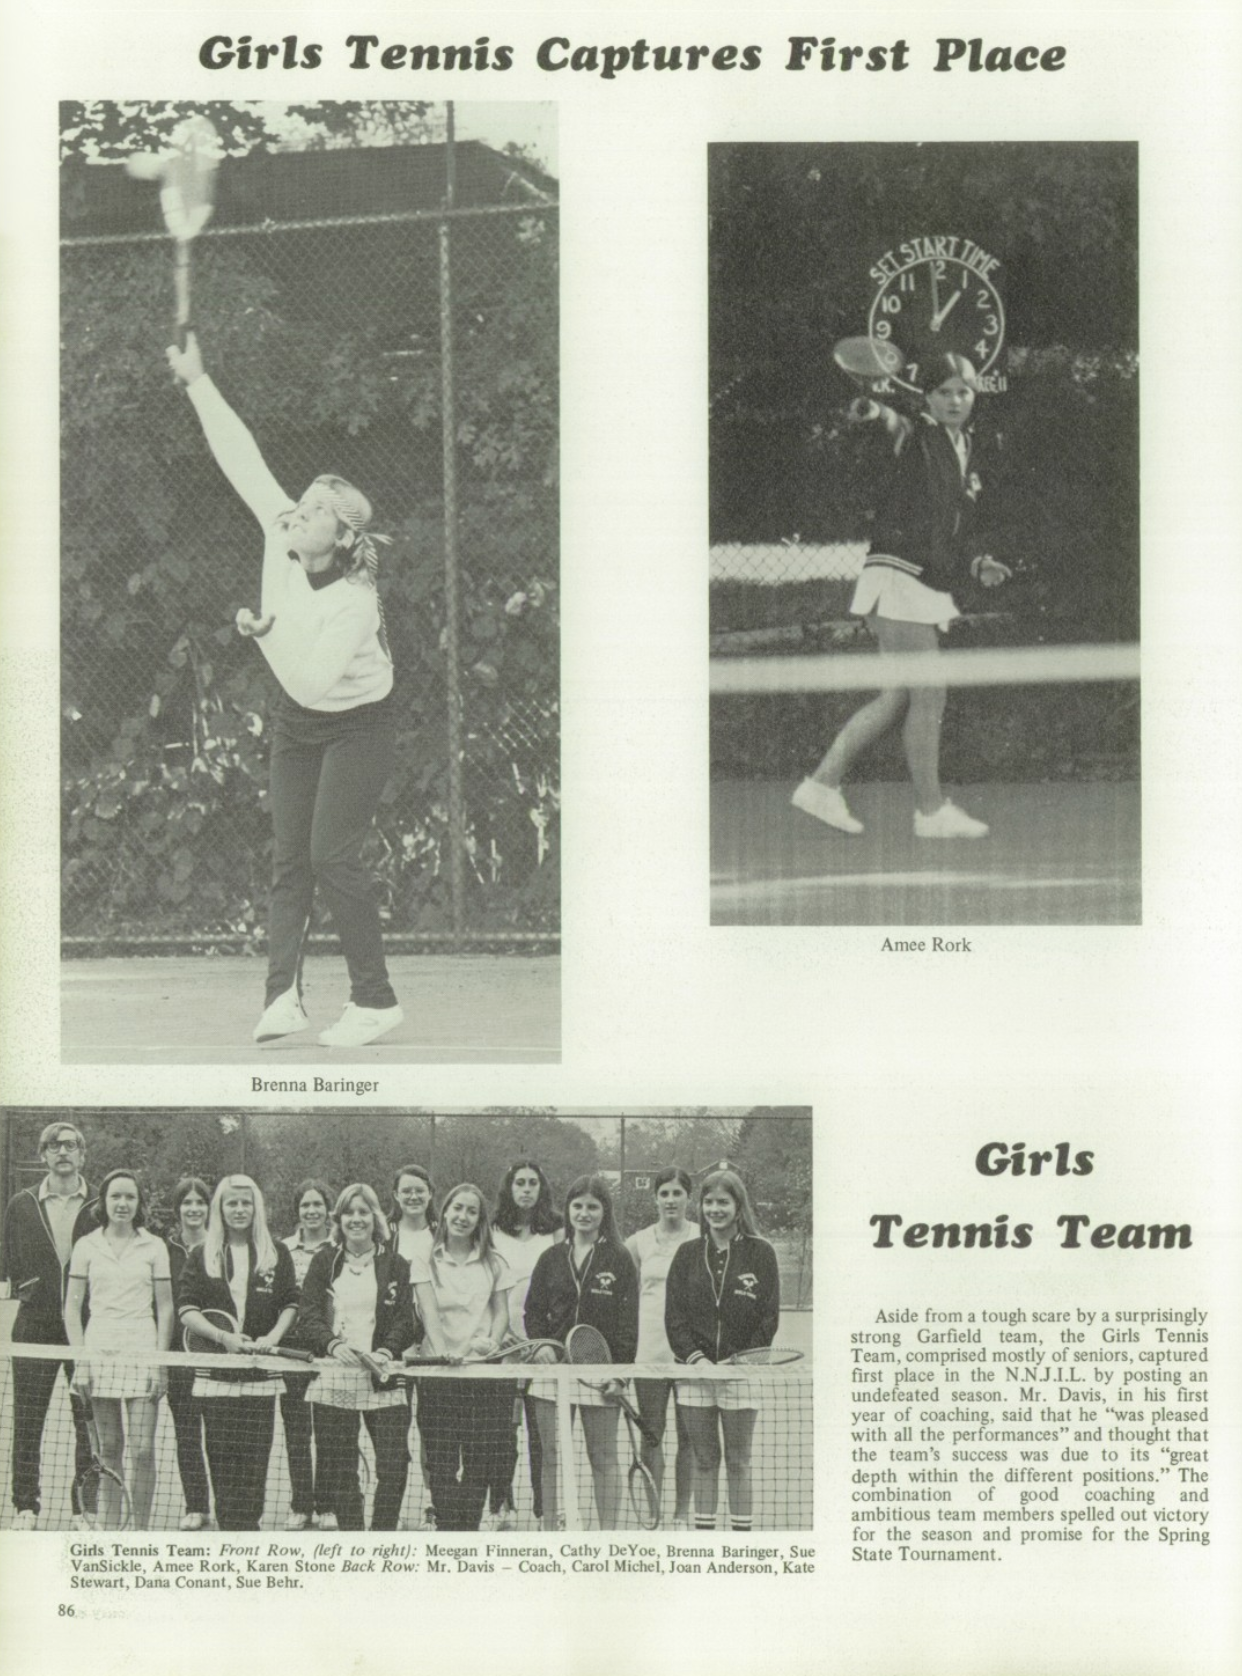 1975 Girls’ Tennis Team